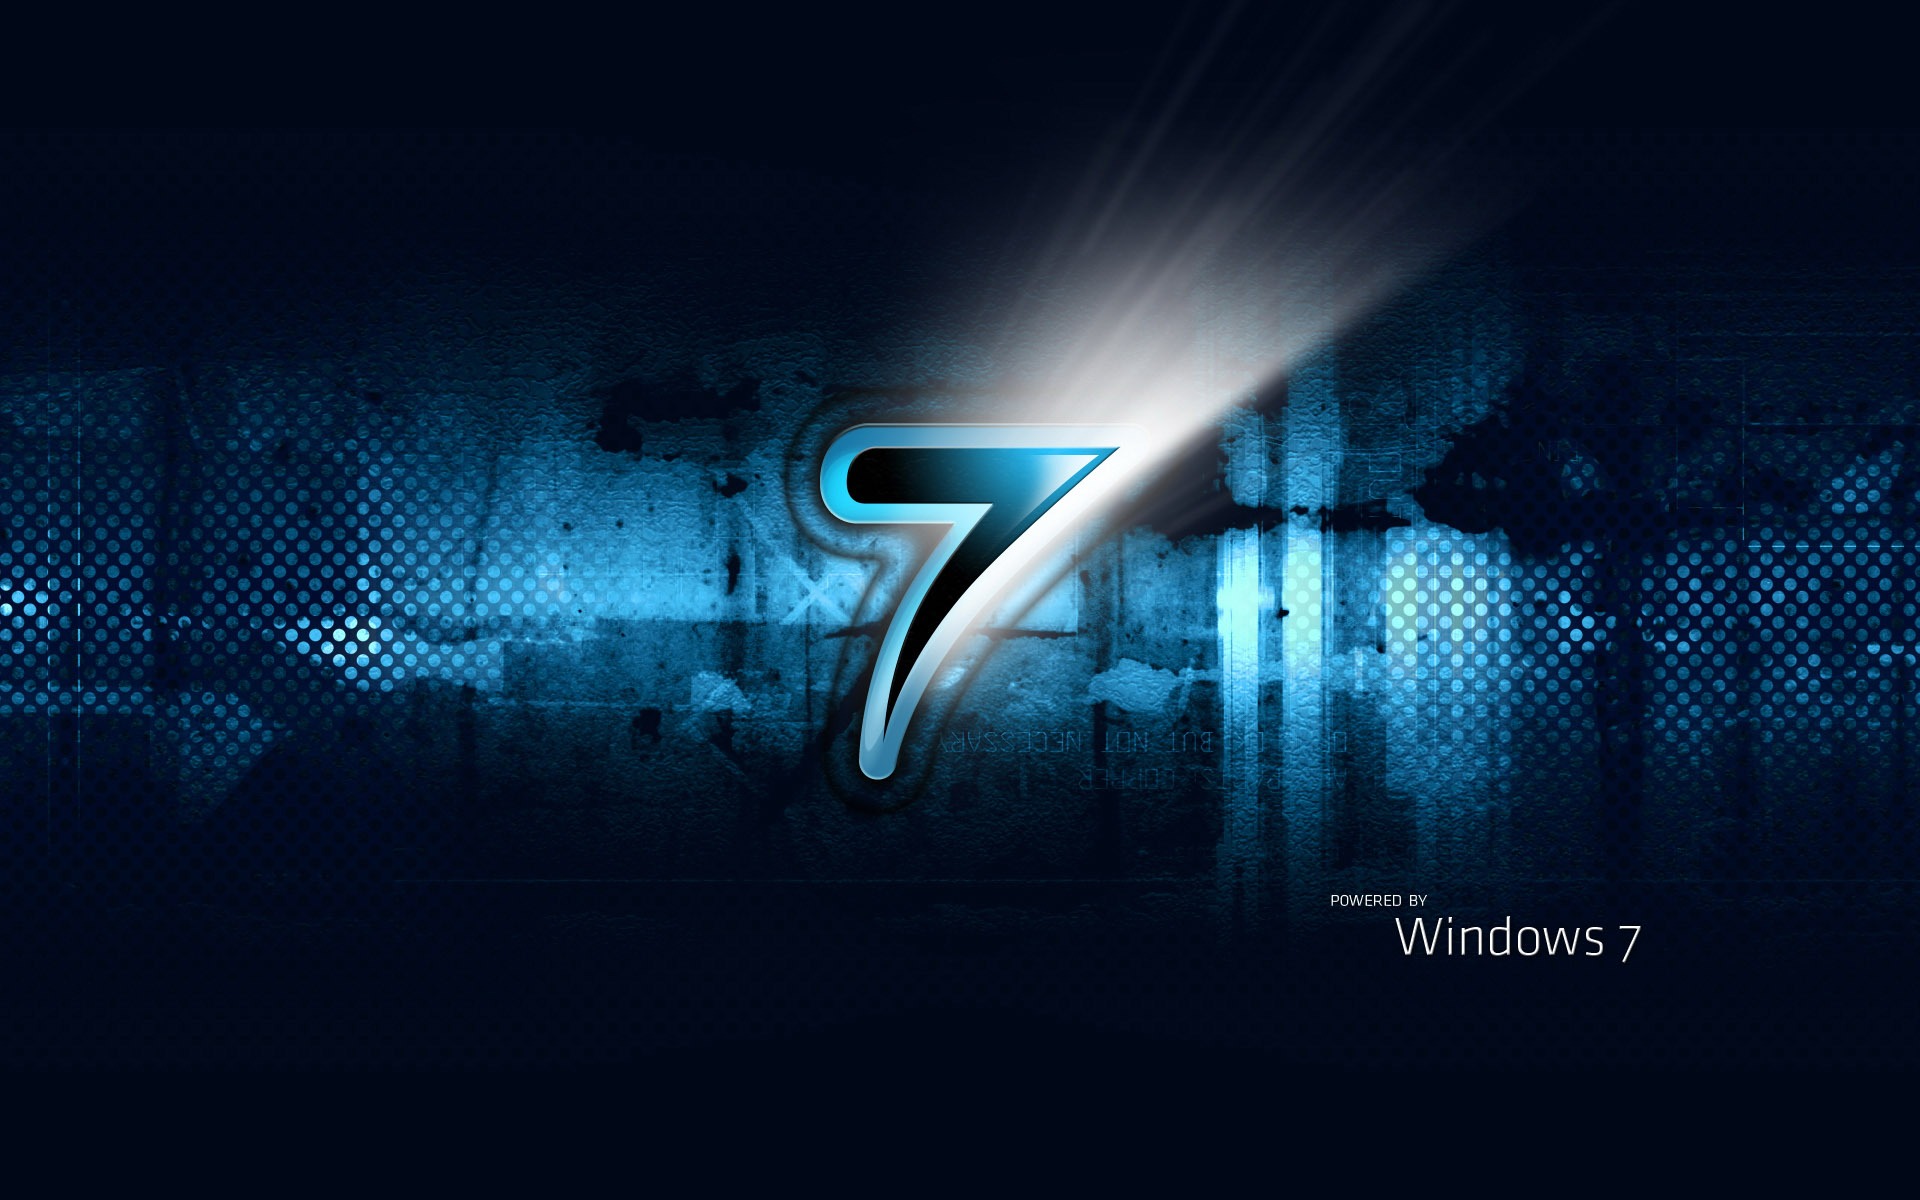 Windows7 theme wallpaper (2) #8 - 1920x1200